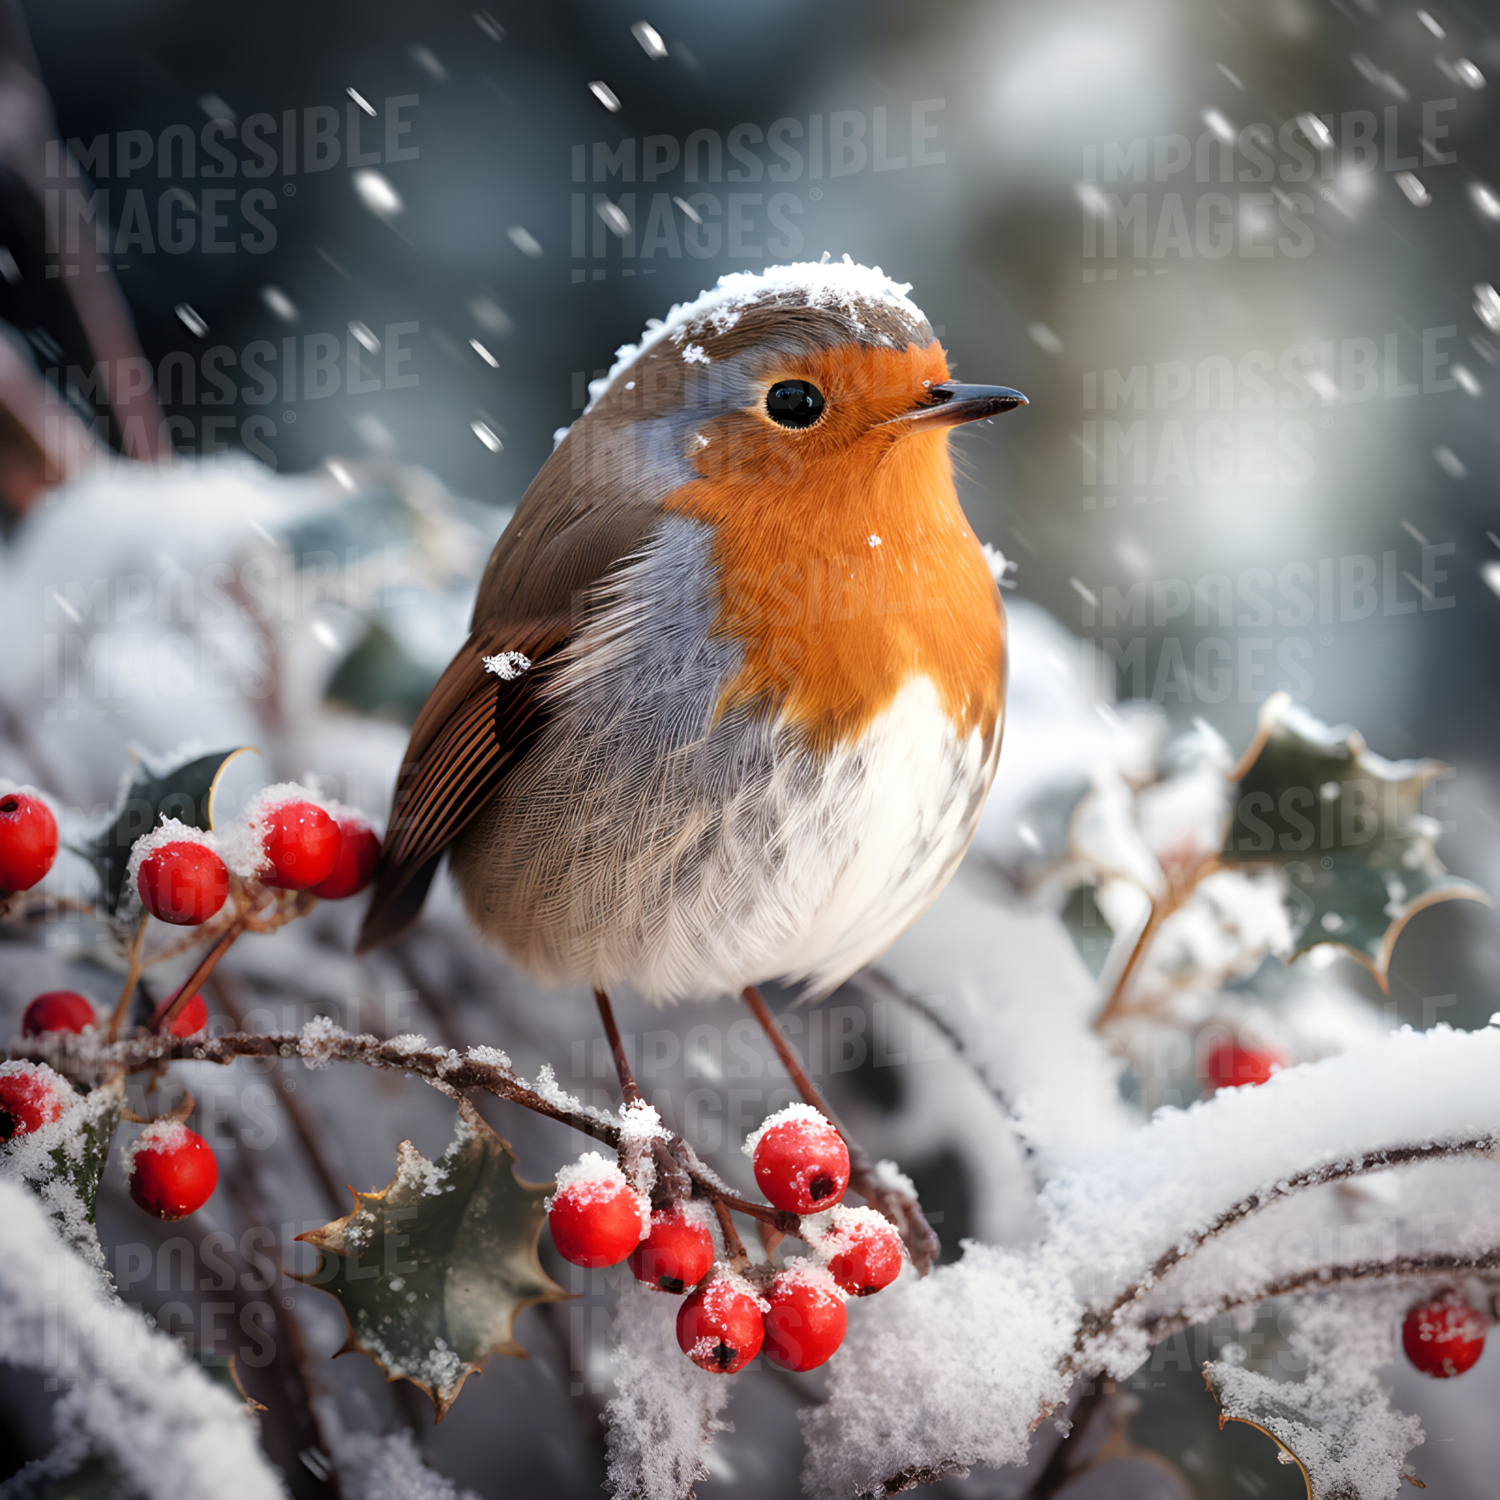 The perfect Christmas robin